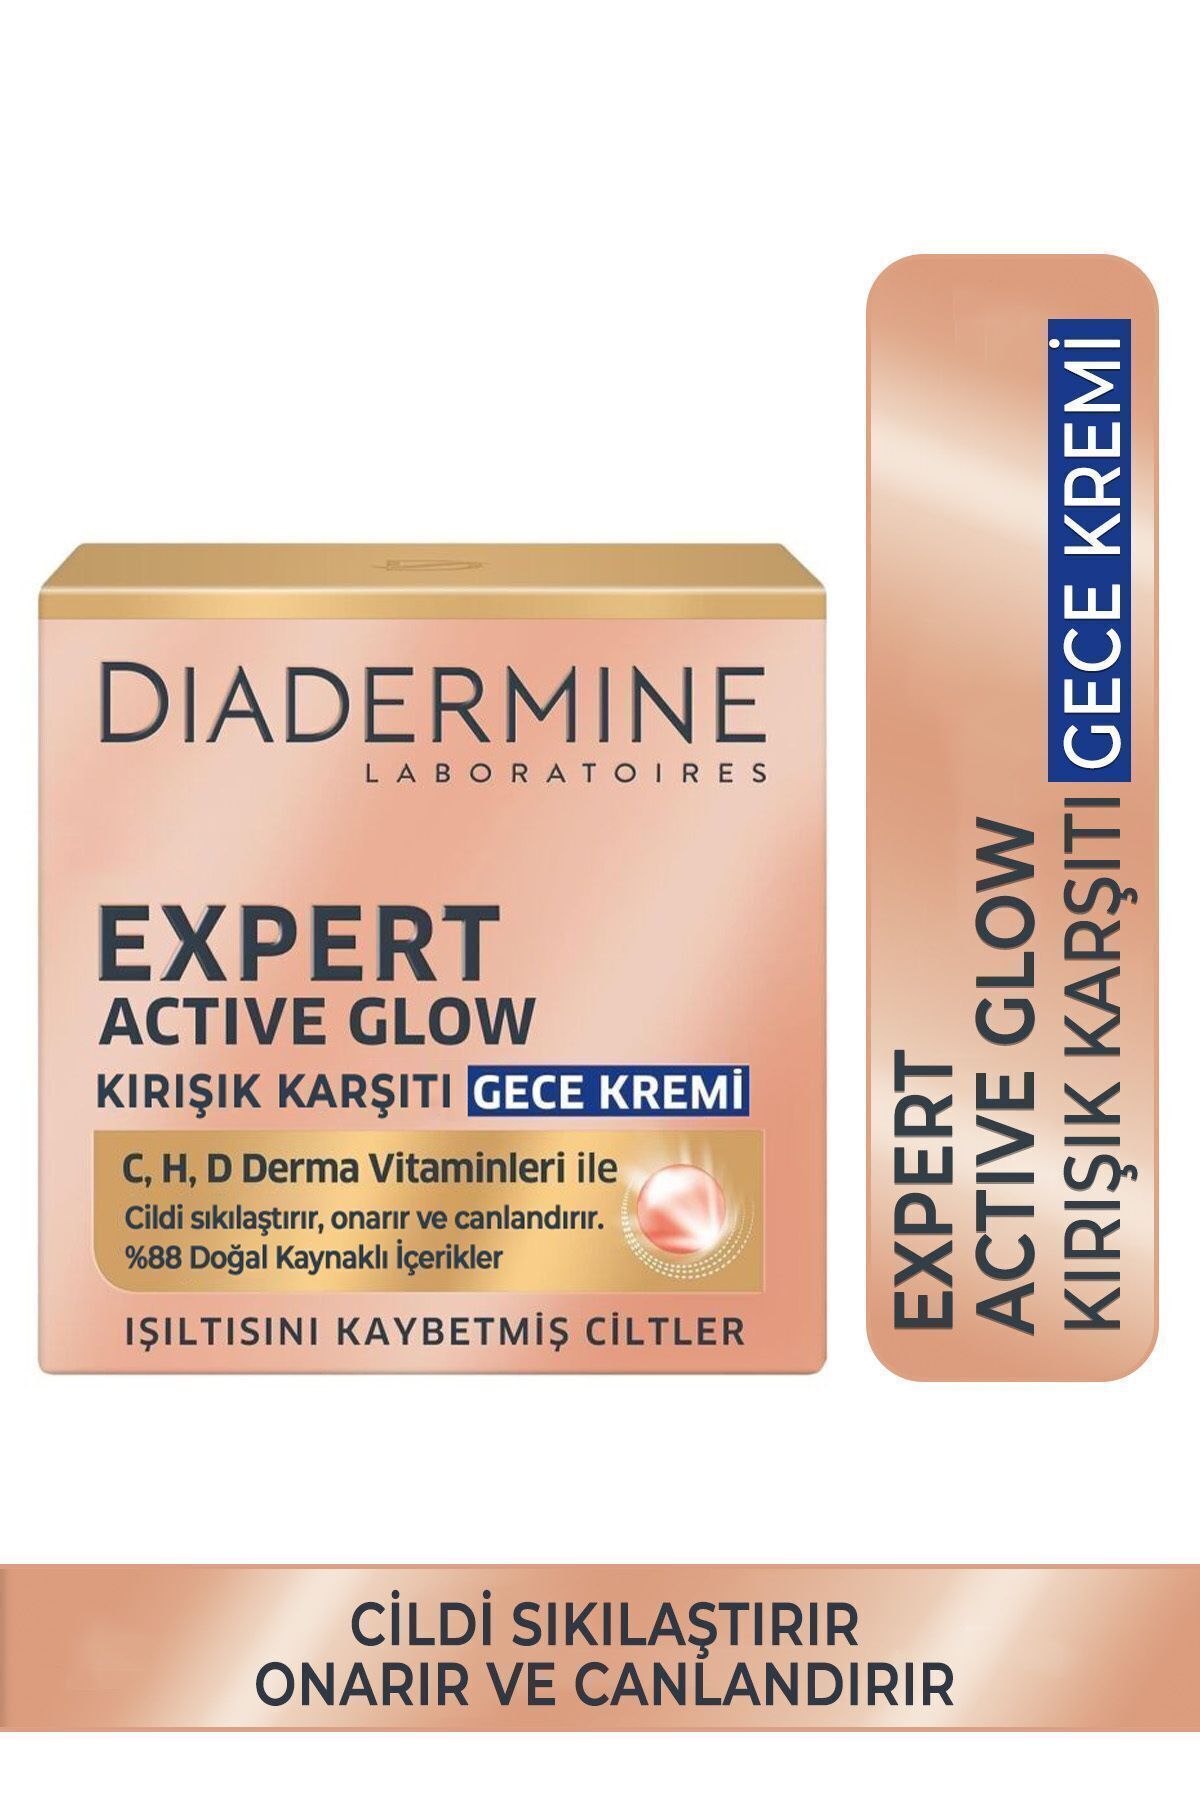 Diadermine Expert Active Glow Yenileyici Gece Kremi 50 ml